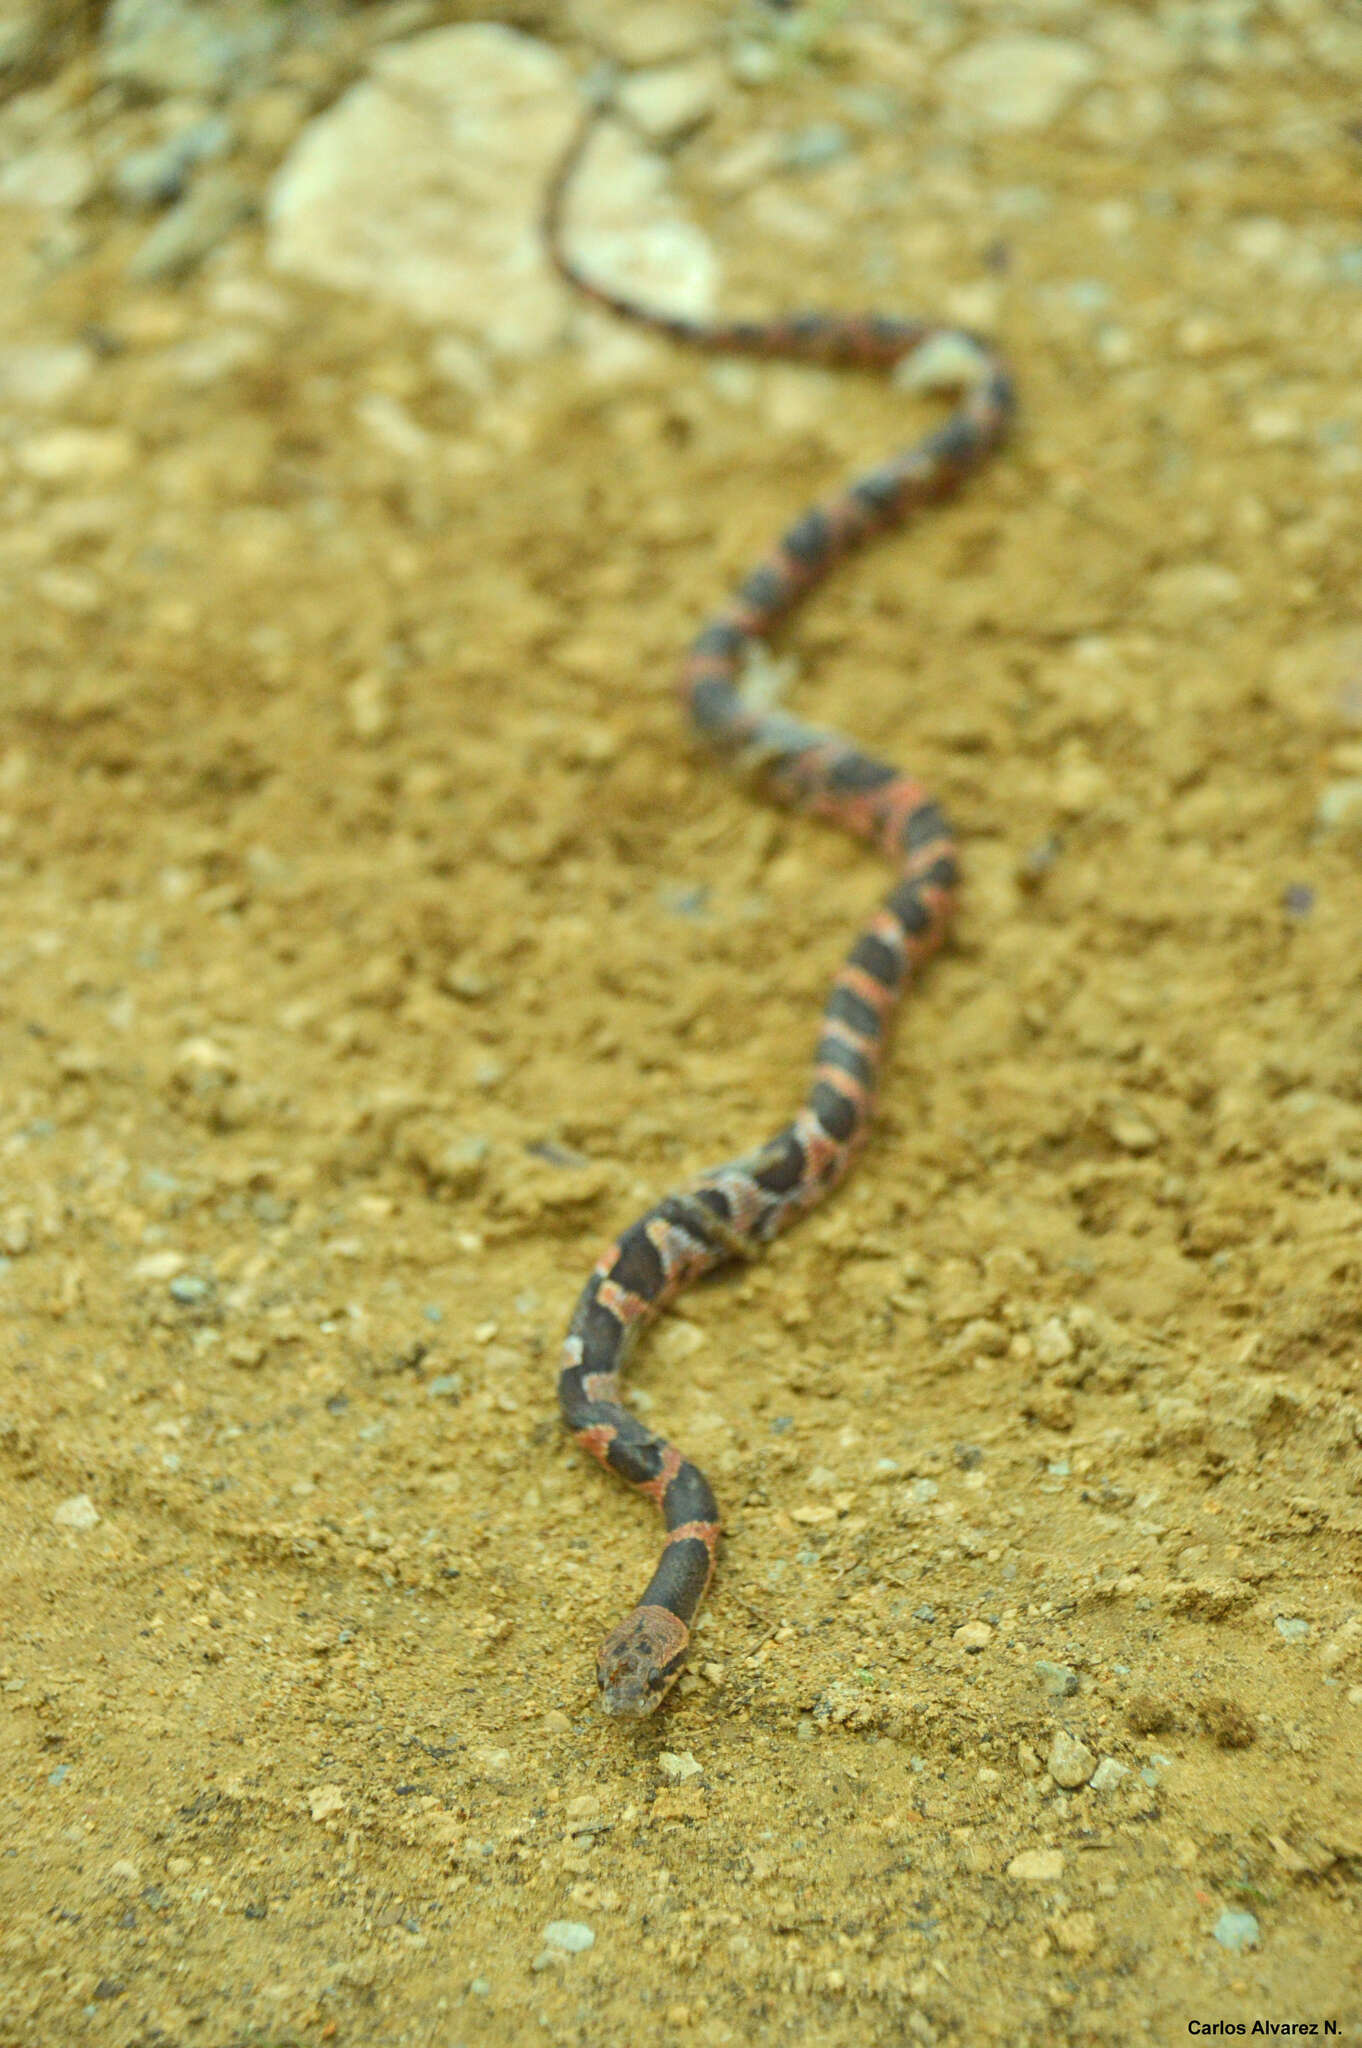 Image of Banded Cat-eyed Snake